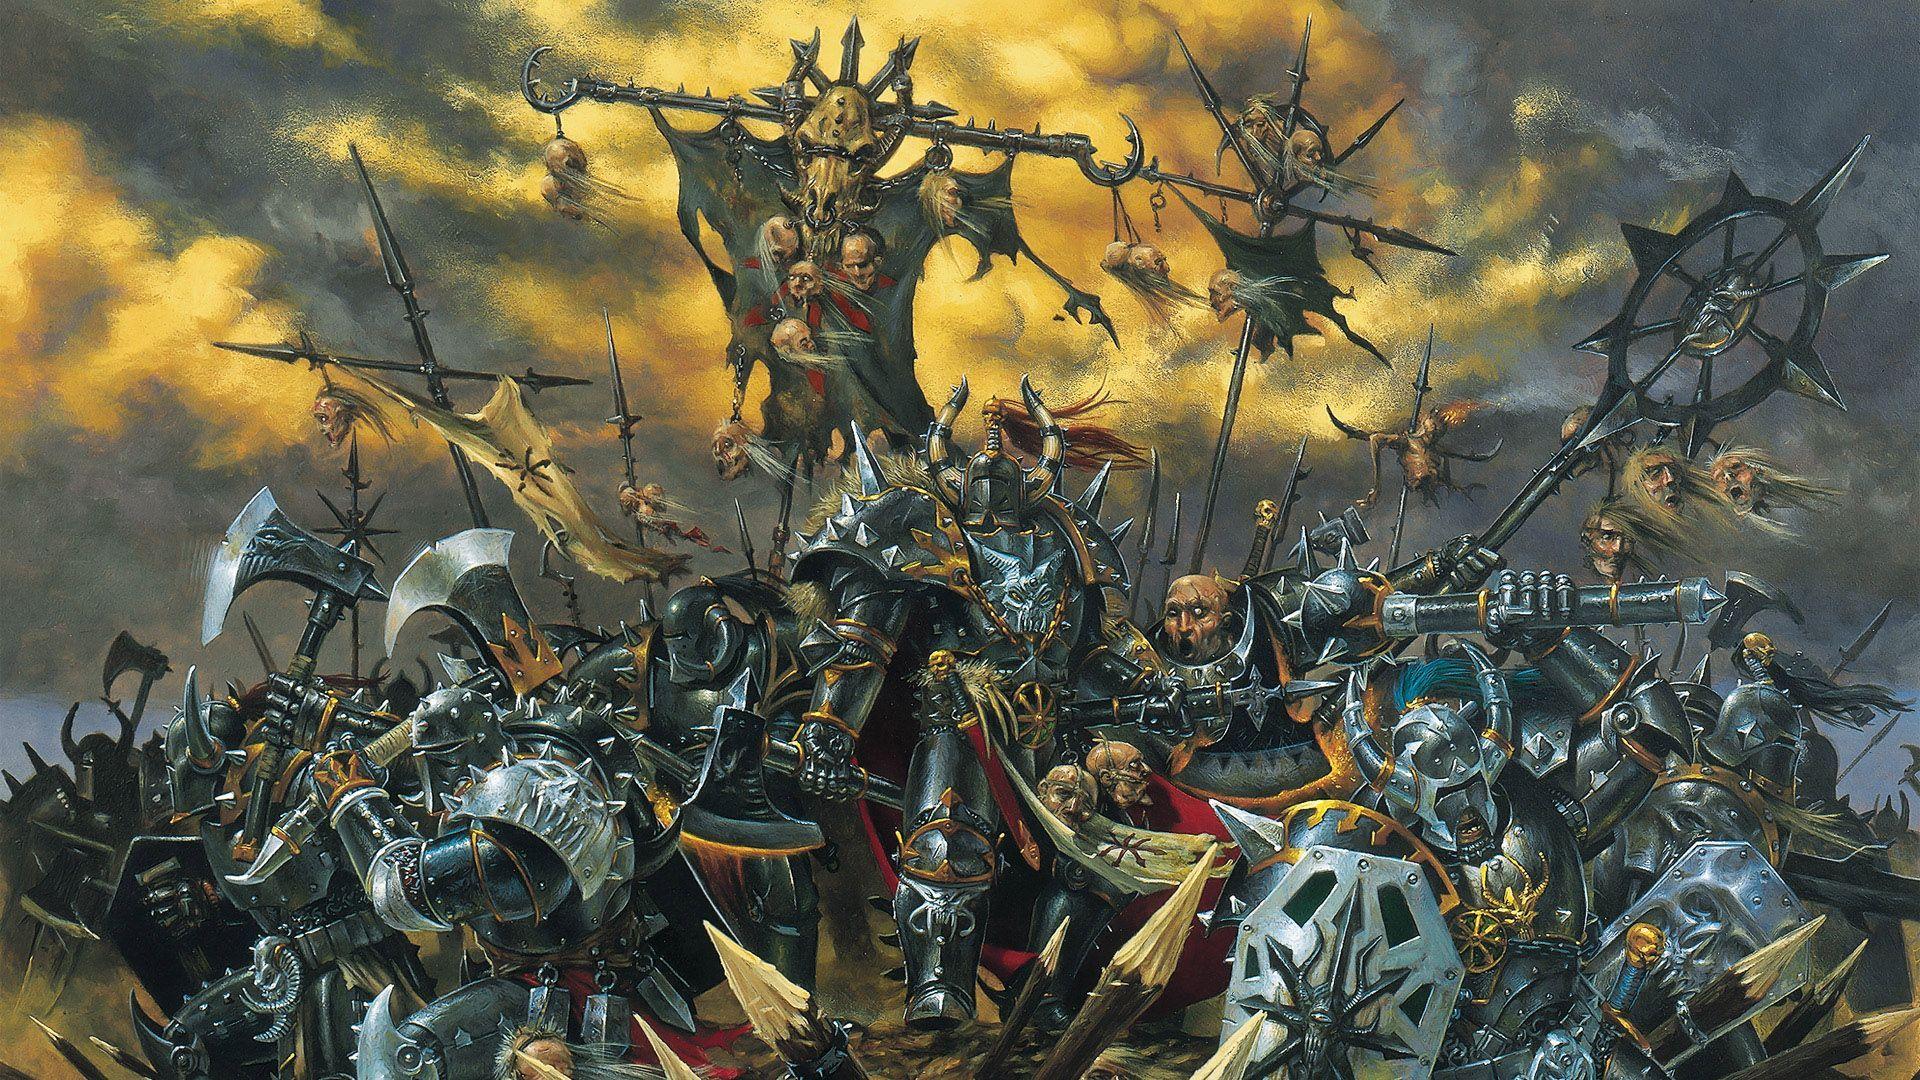 Warhammer Wallpaper. Warhammer Fantasy Illustration